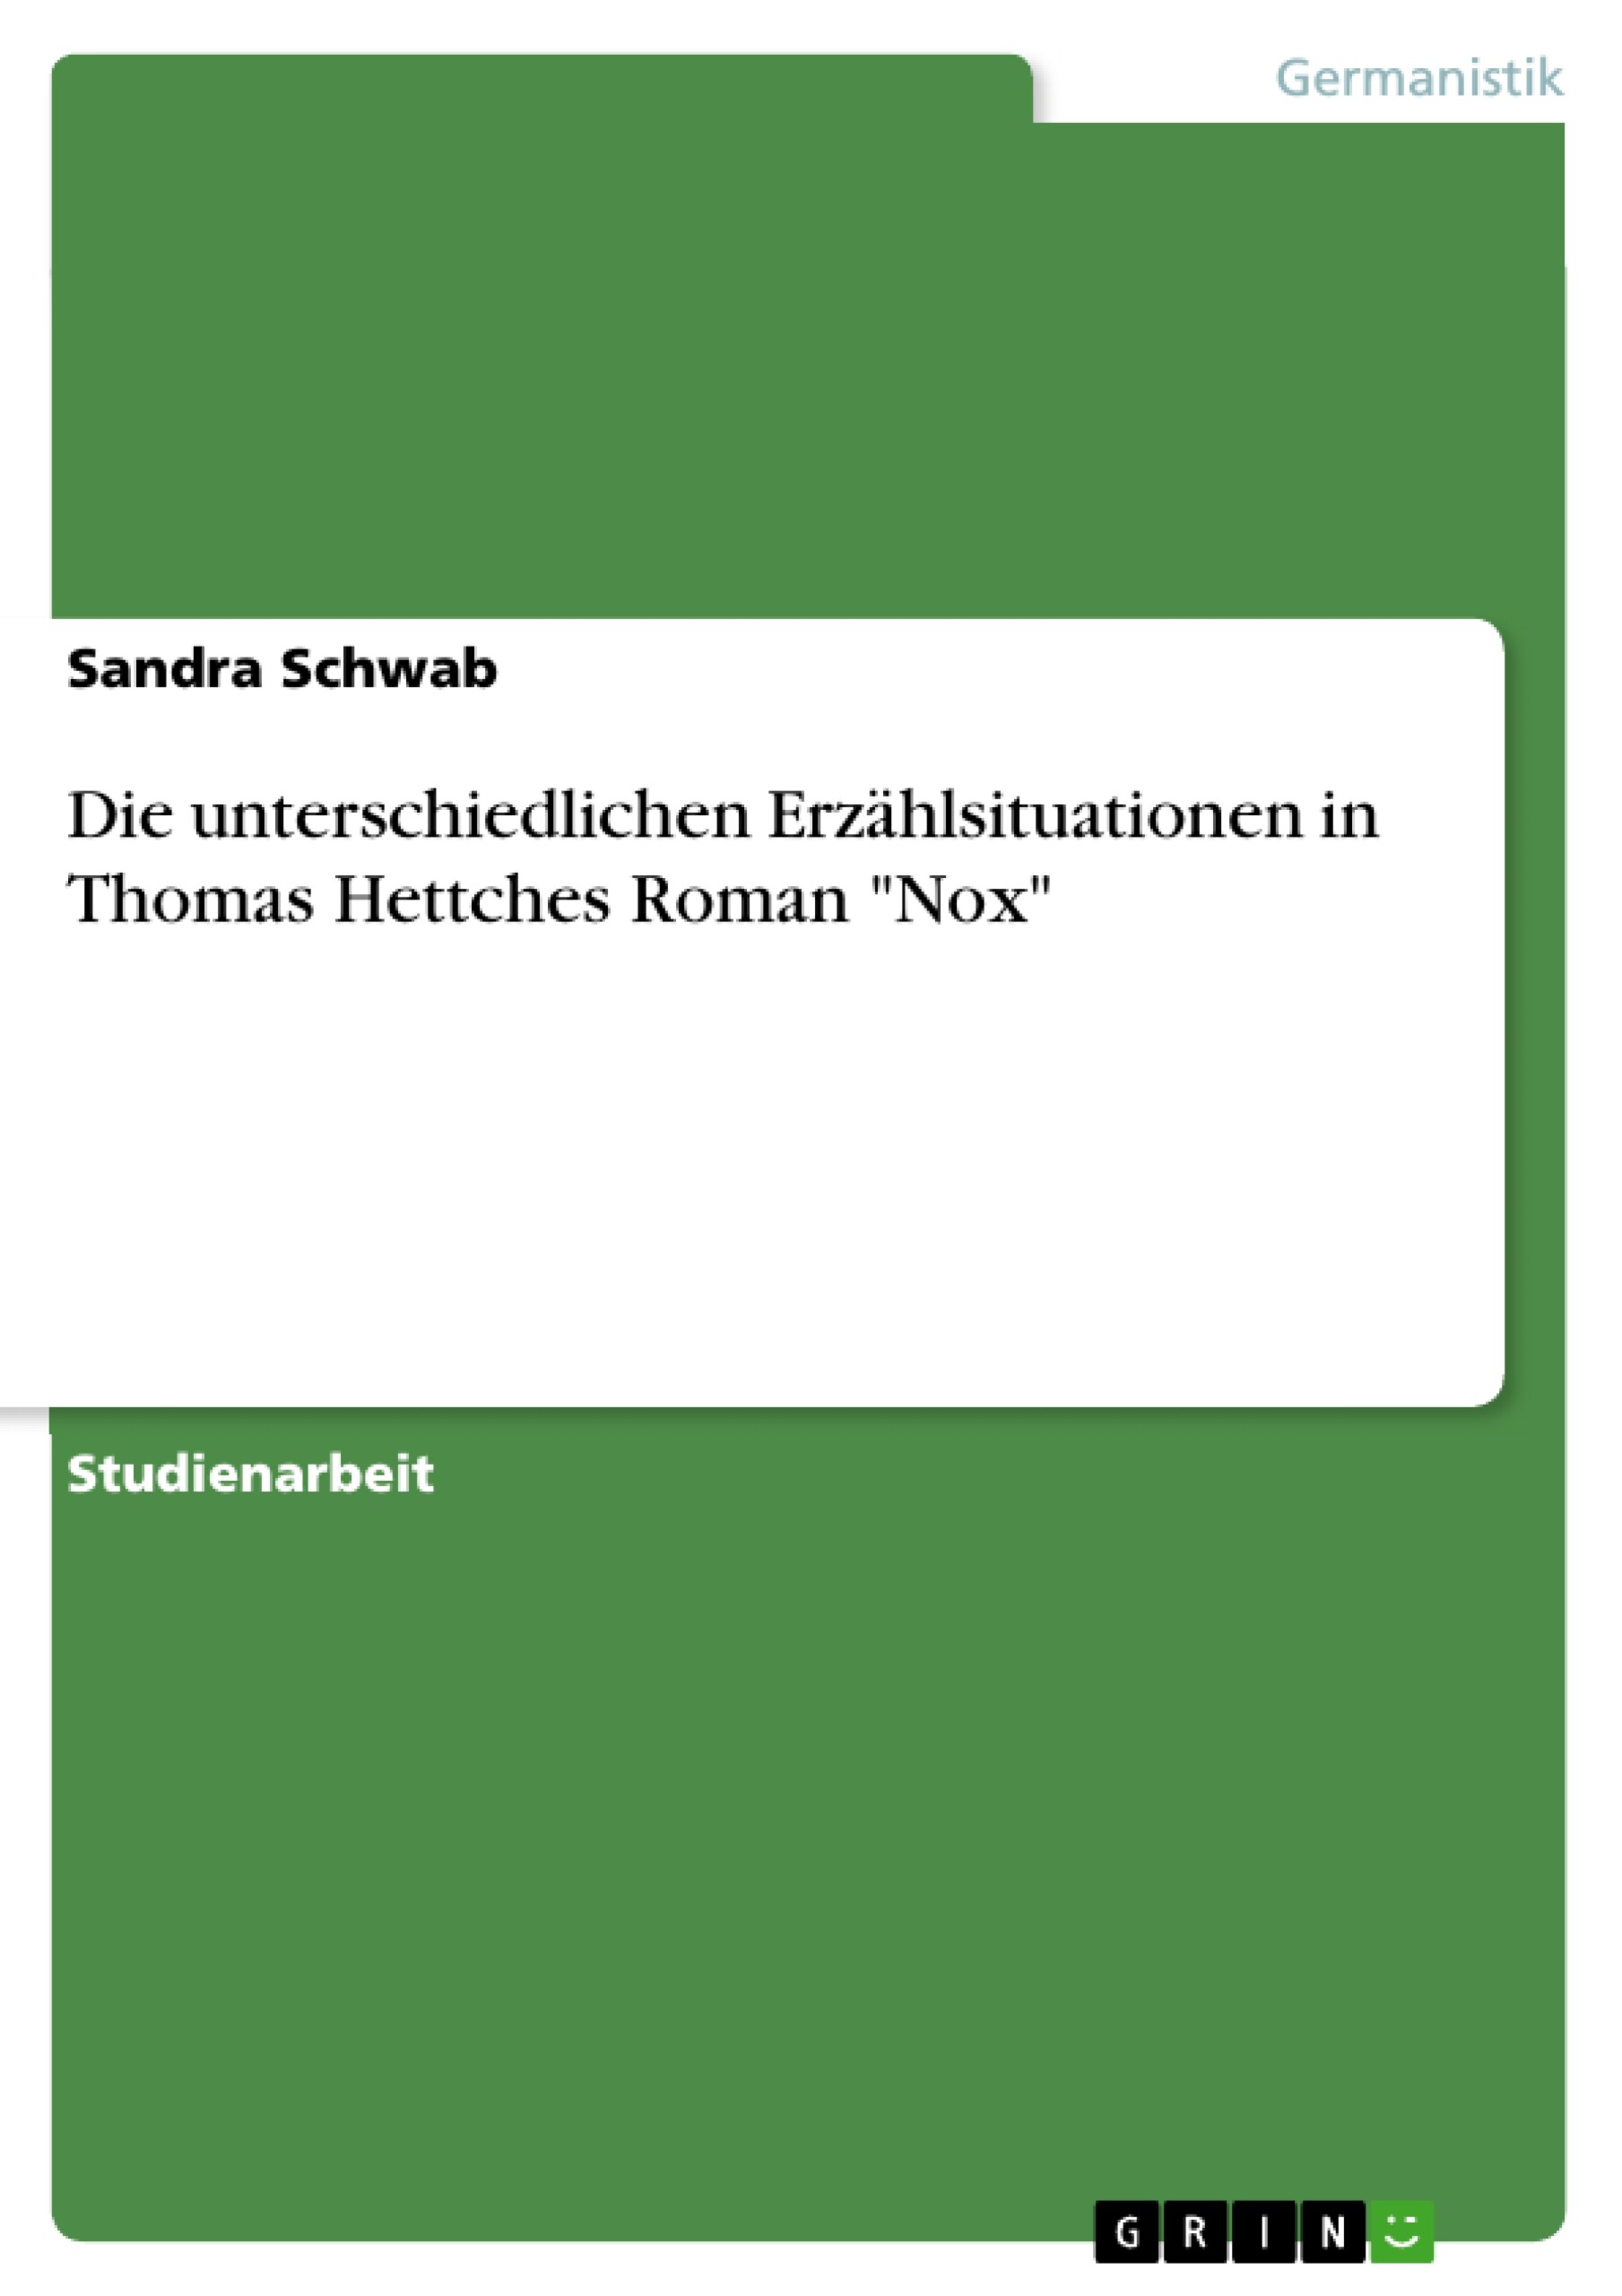 Die unterschiedlichen Erzählsituationen in Thomas Hettches Roman 'Nox'